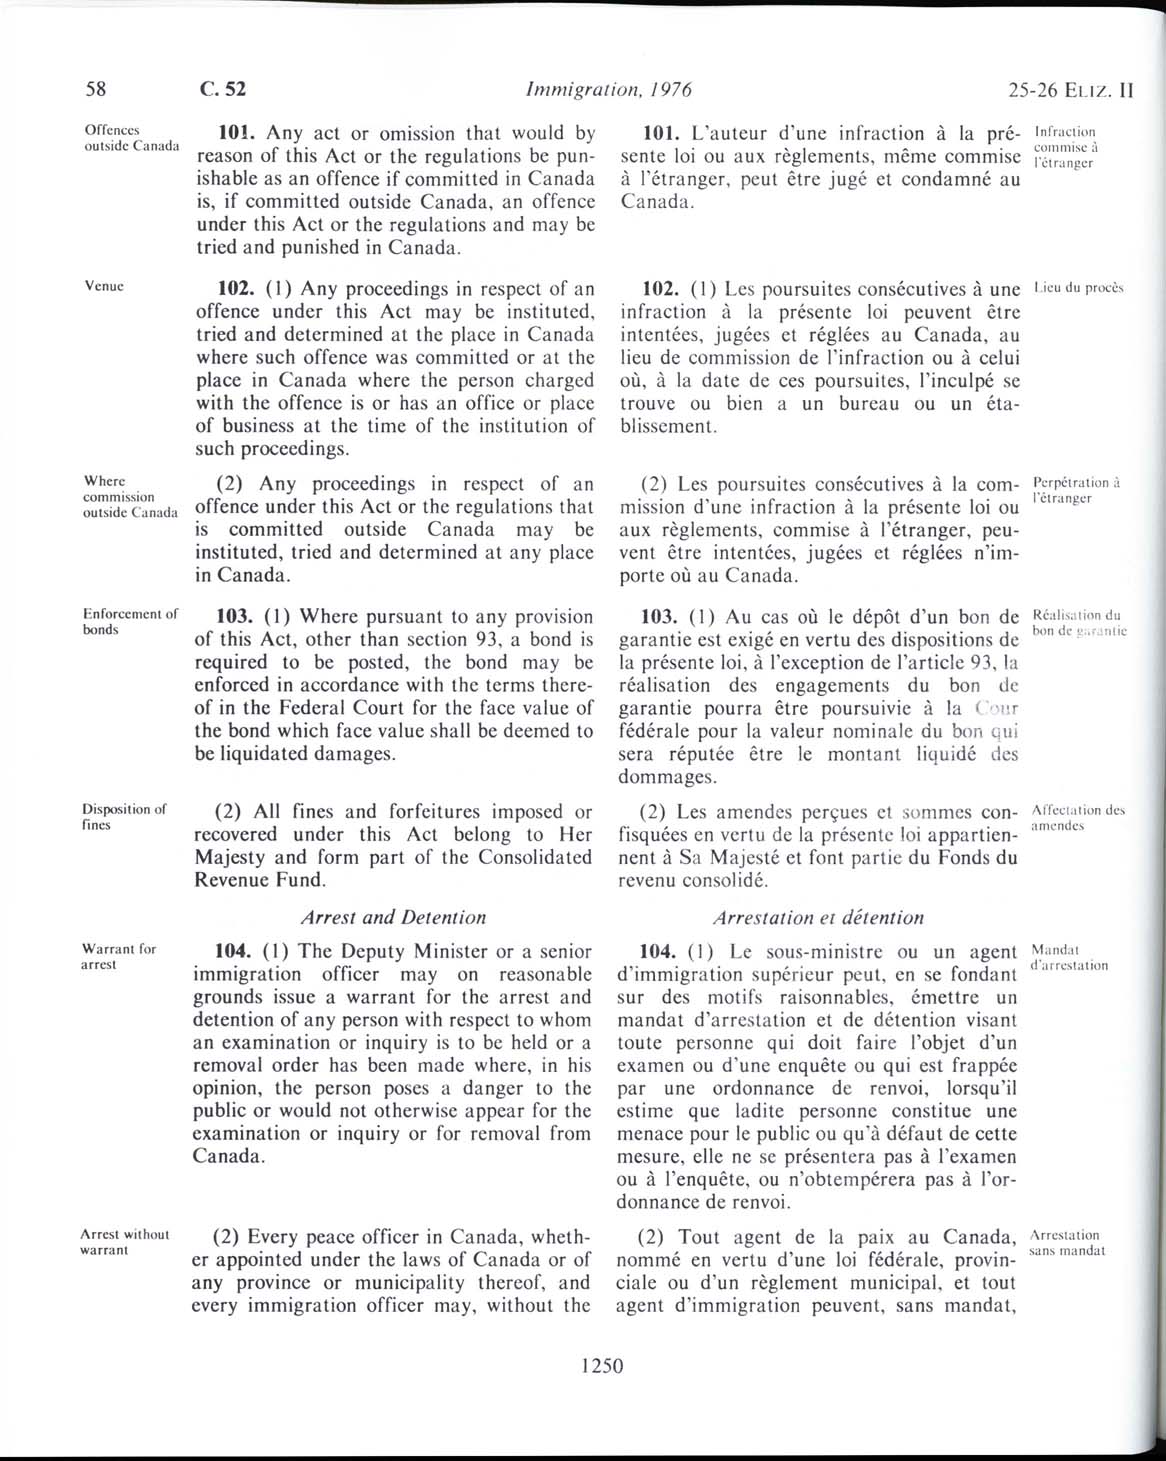 Page 1250 Loi sur l’immigration de 1976